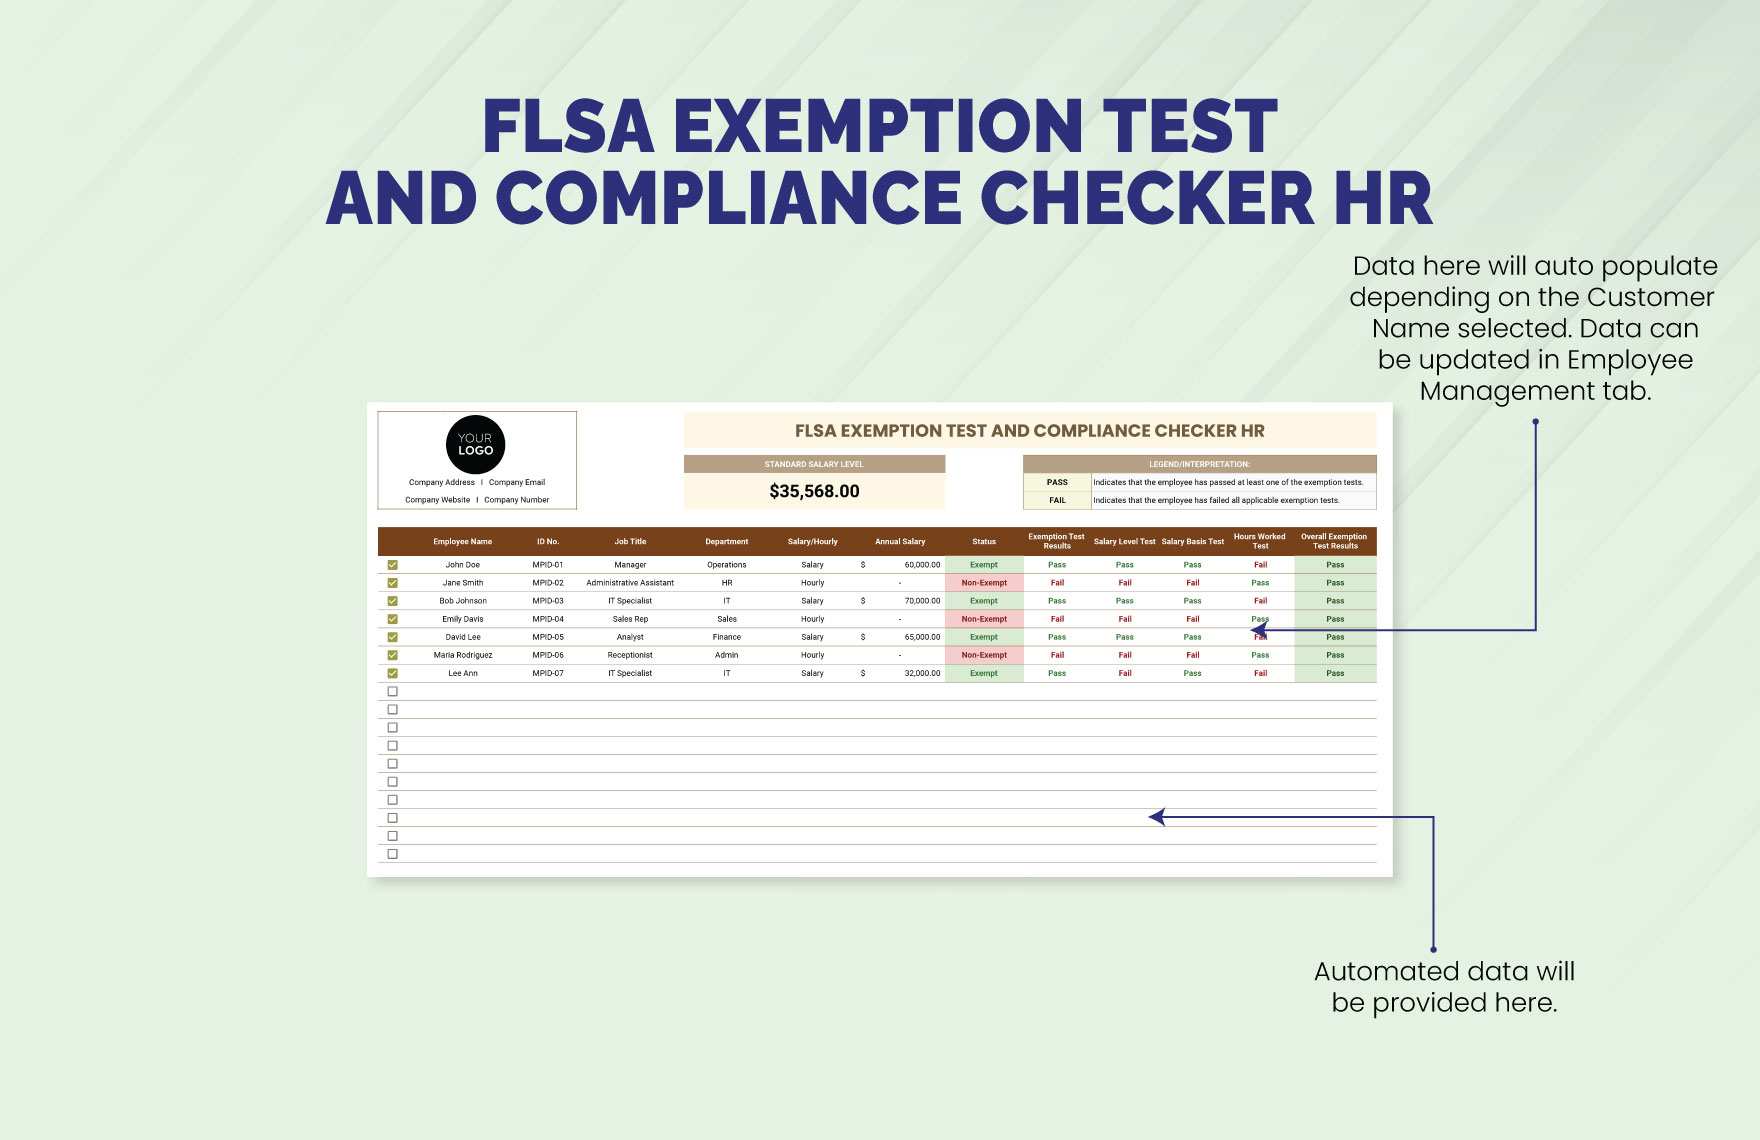 FLSA Exemption Test and Compliance Checker HR Template